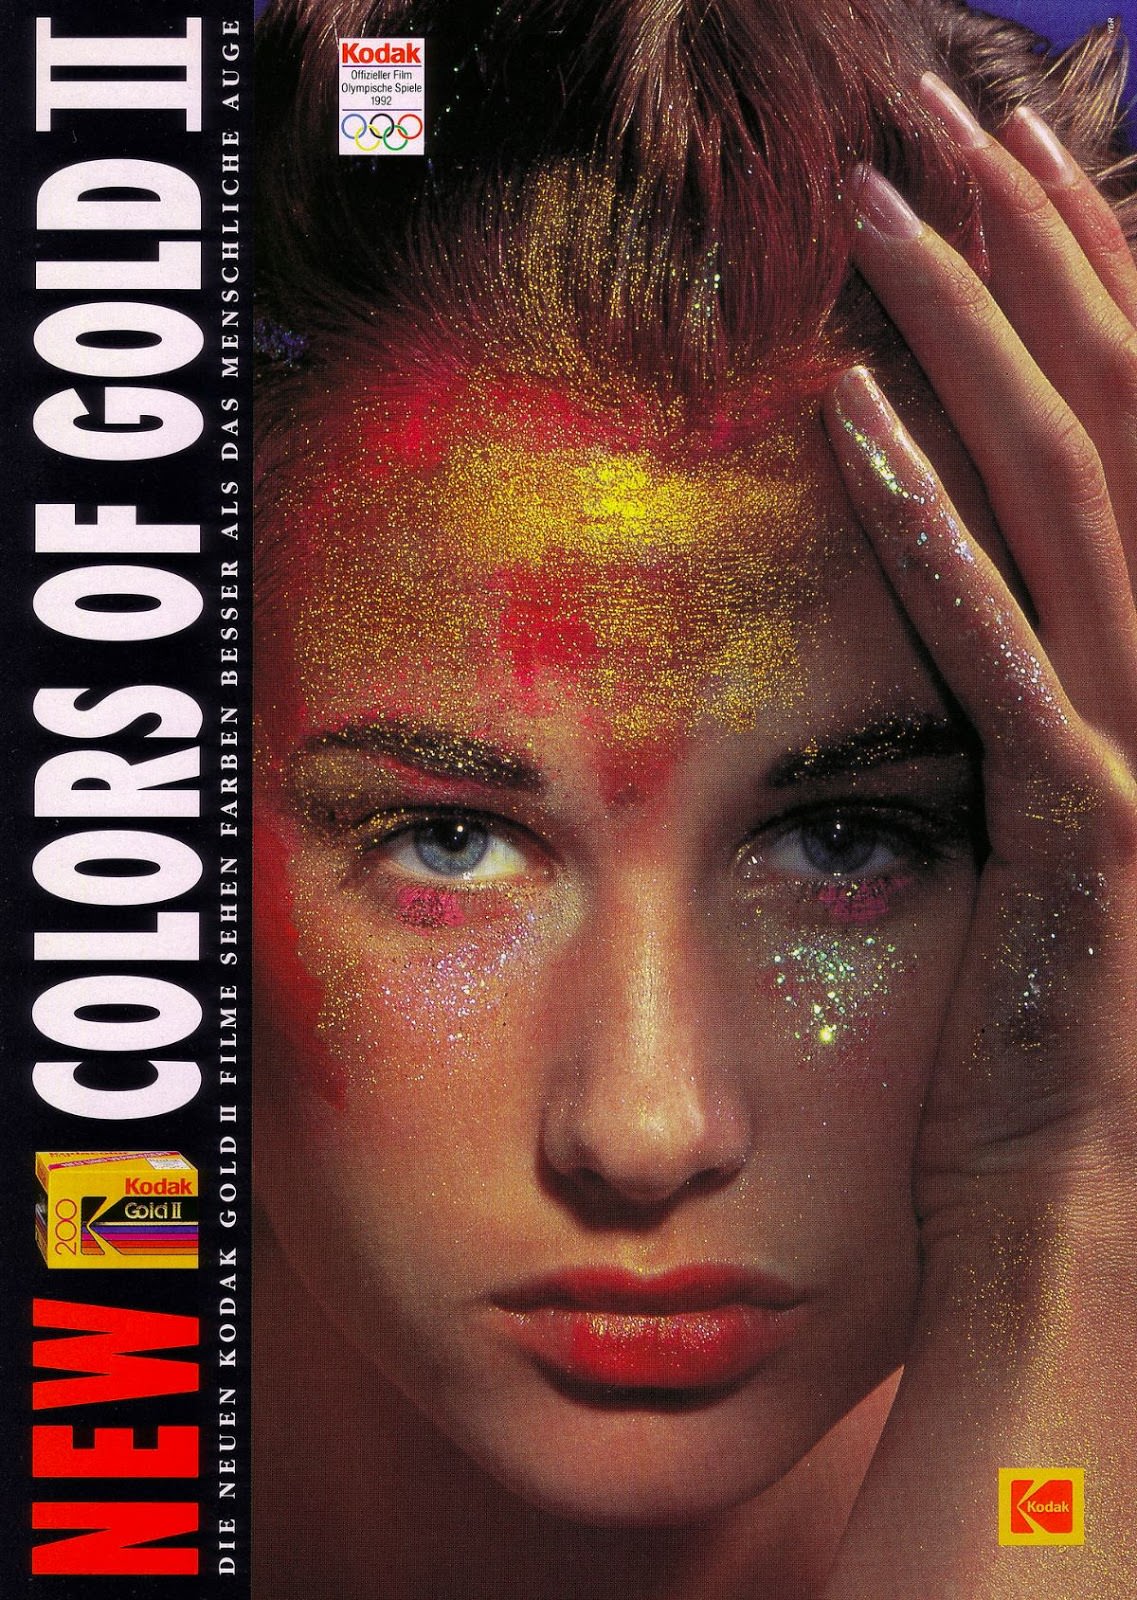 Kodak (1992) Gold II 200